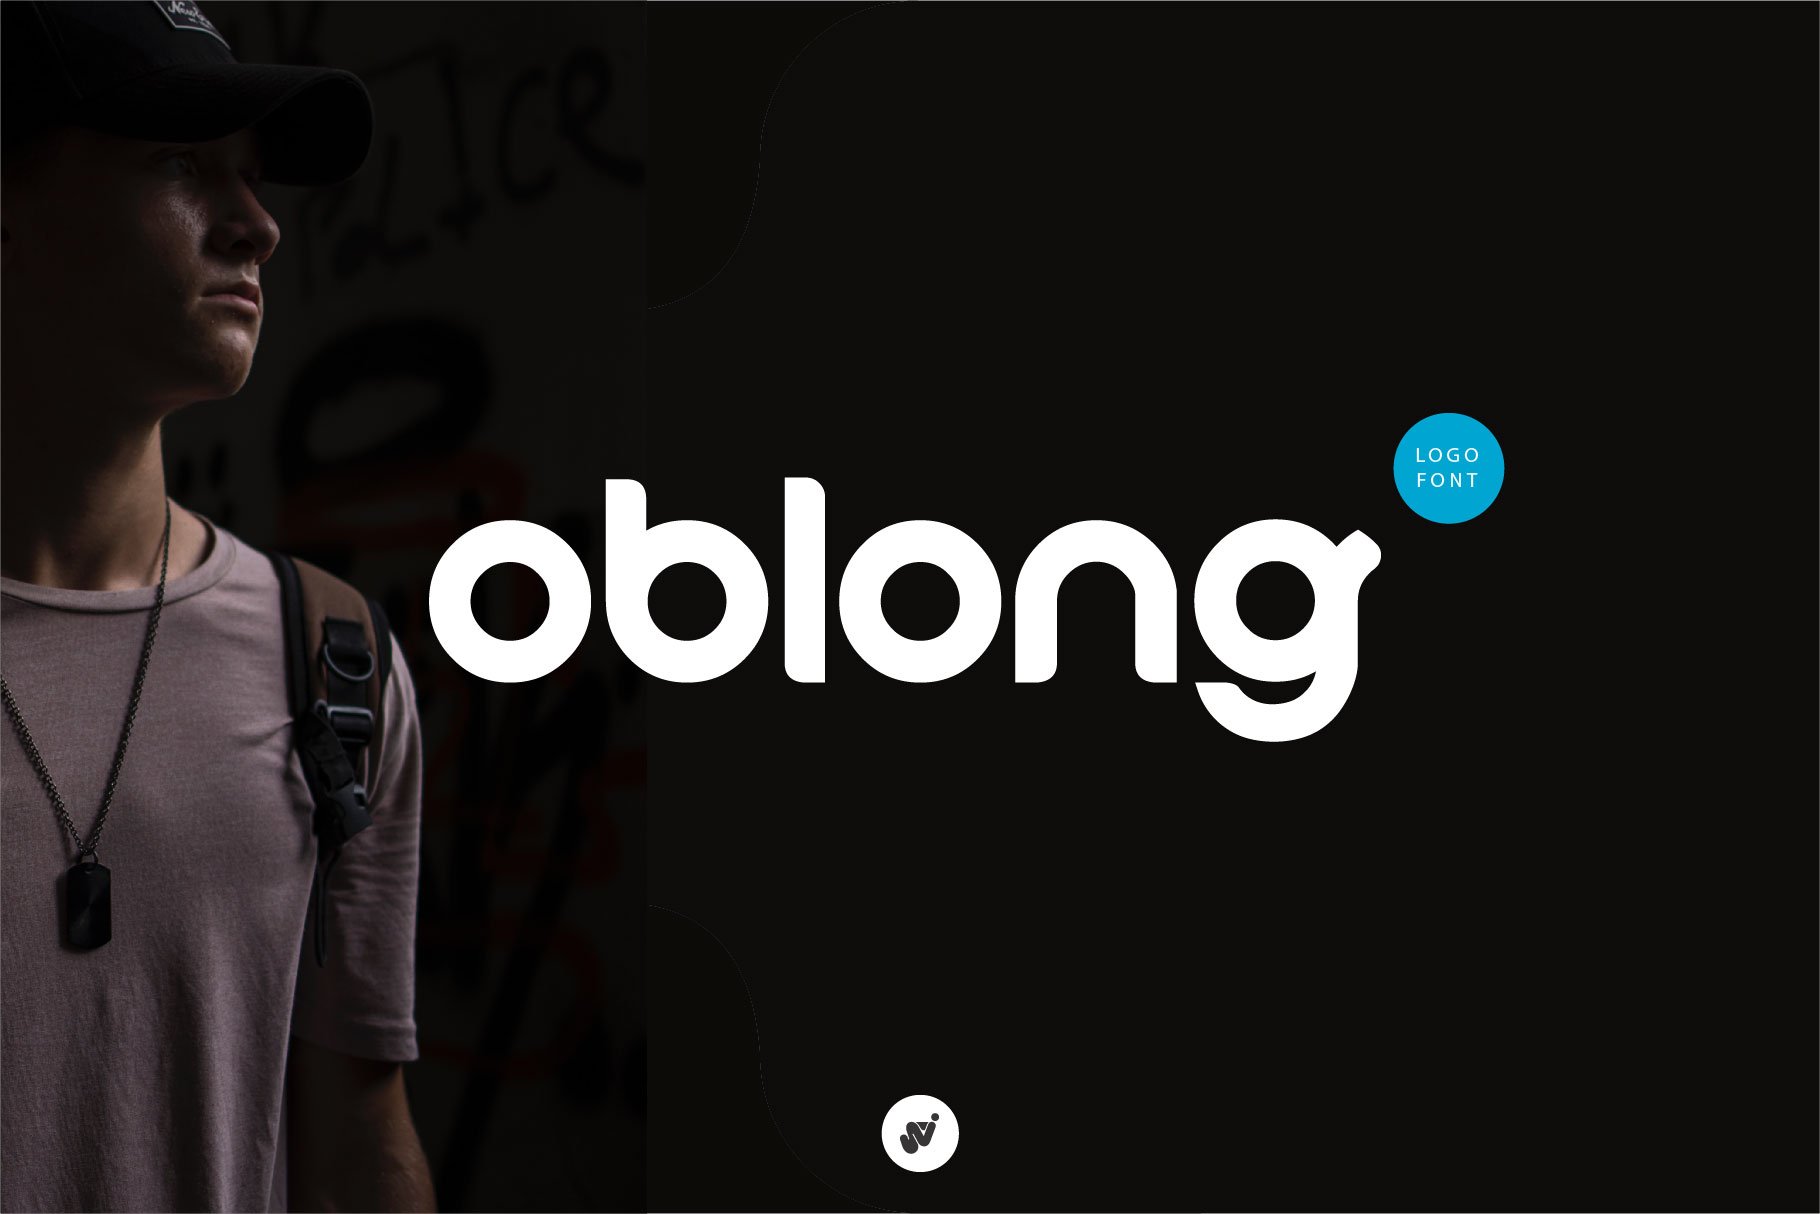 oblong logo font cover image.